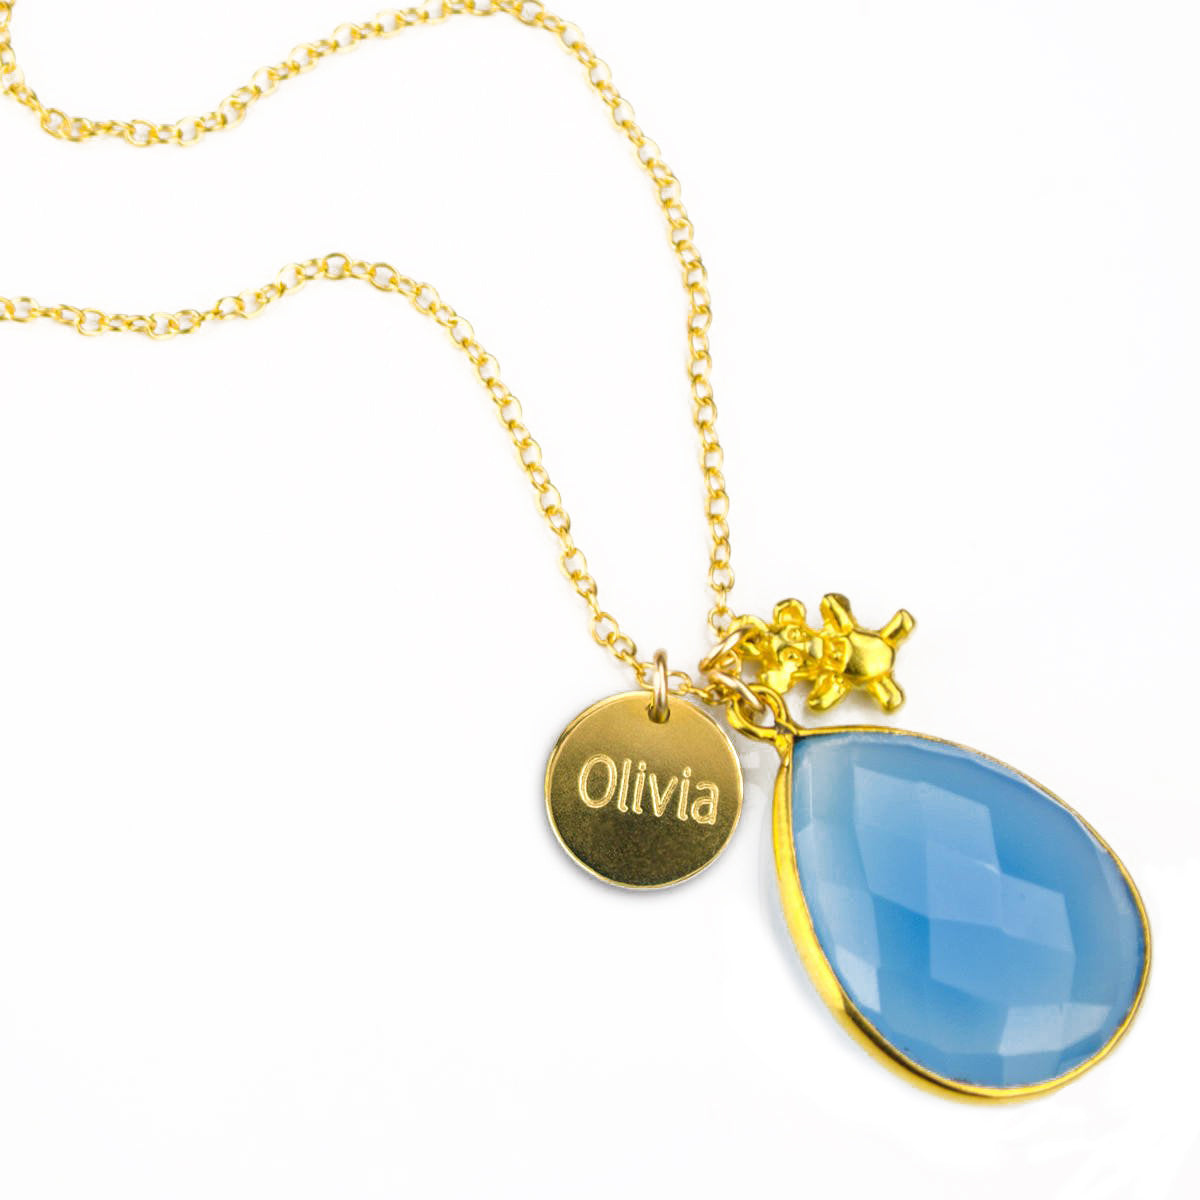 Oliver Teddy Bear Necklace Gold - Kinn